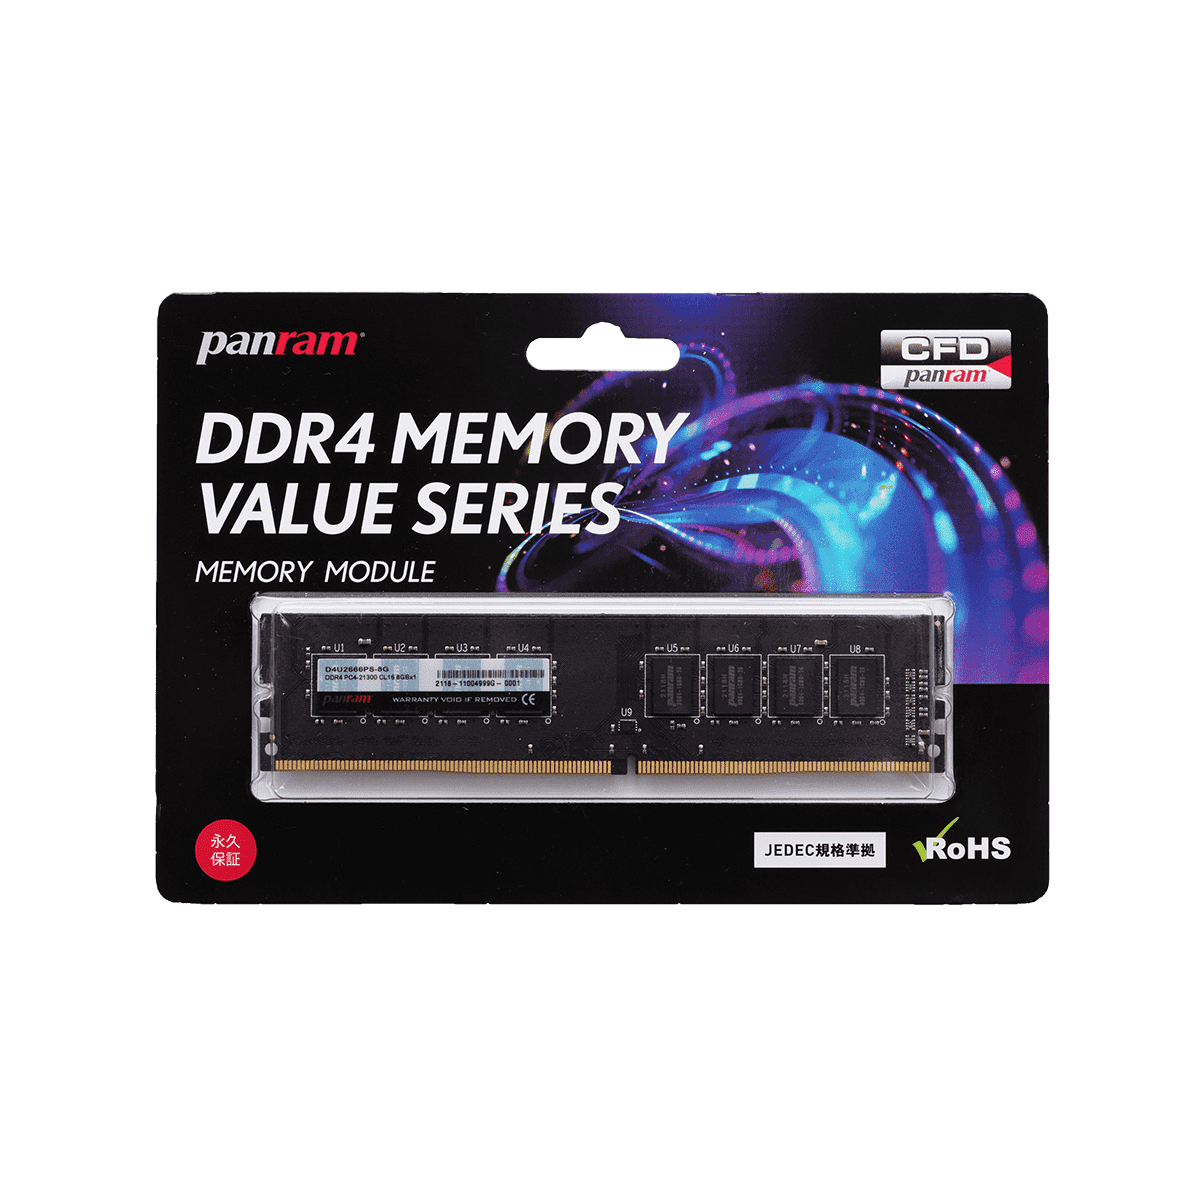 デスクトップ用 DDR4-2666 | PCパーツメーカーの総合サプライヤーCFD 